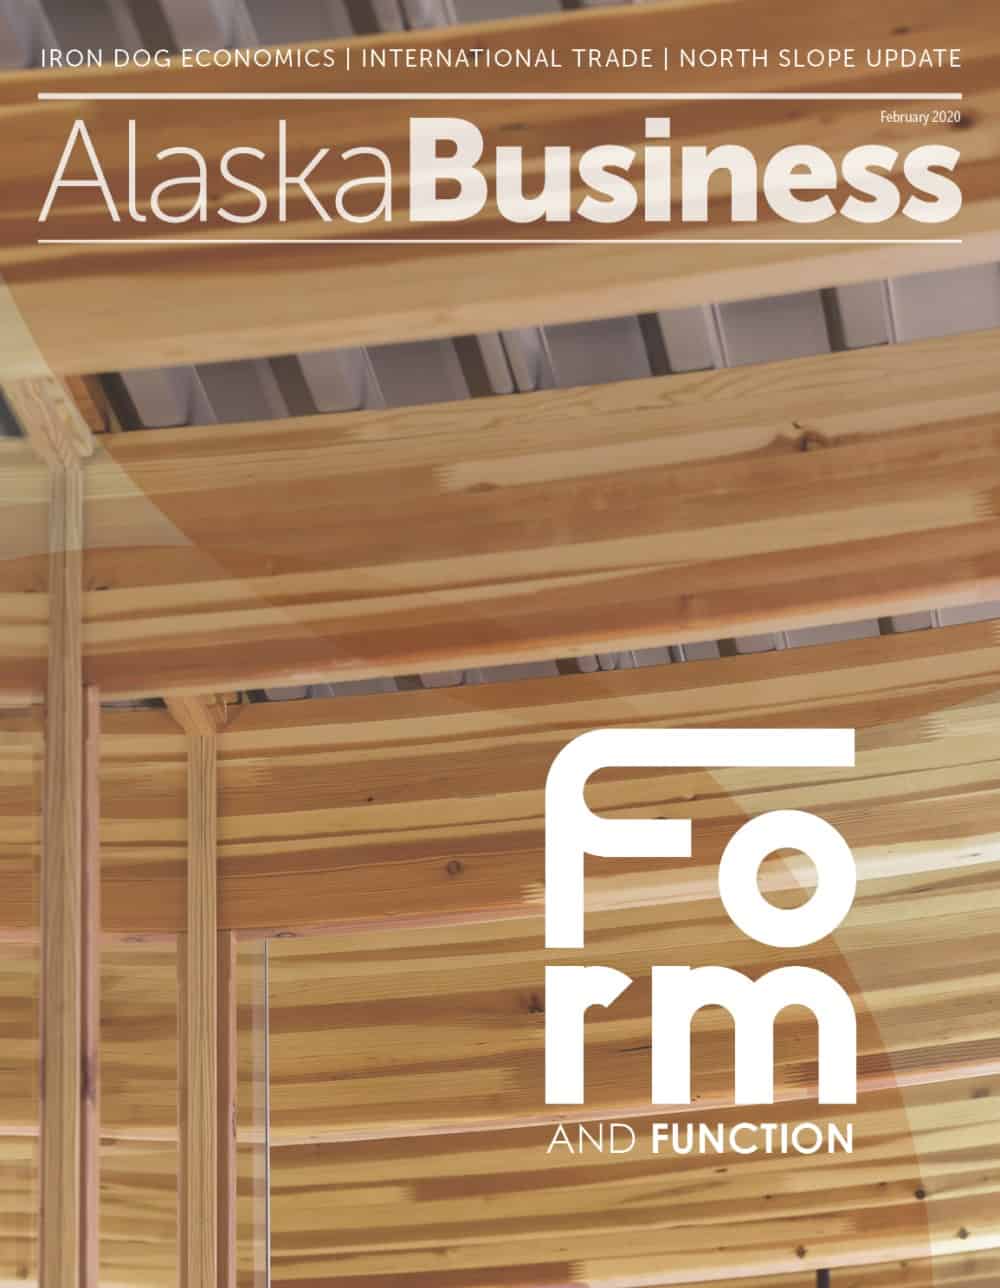 Alaska Business Magazine February 2020 cover